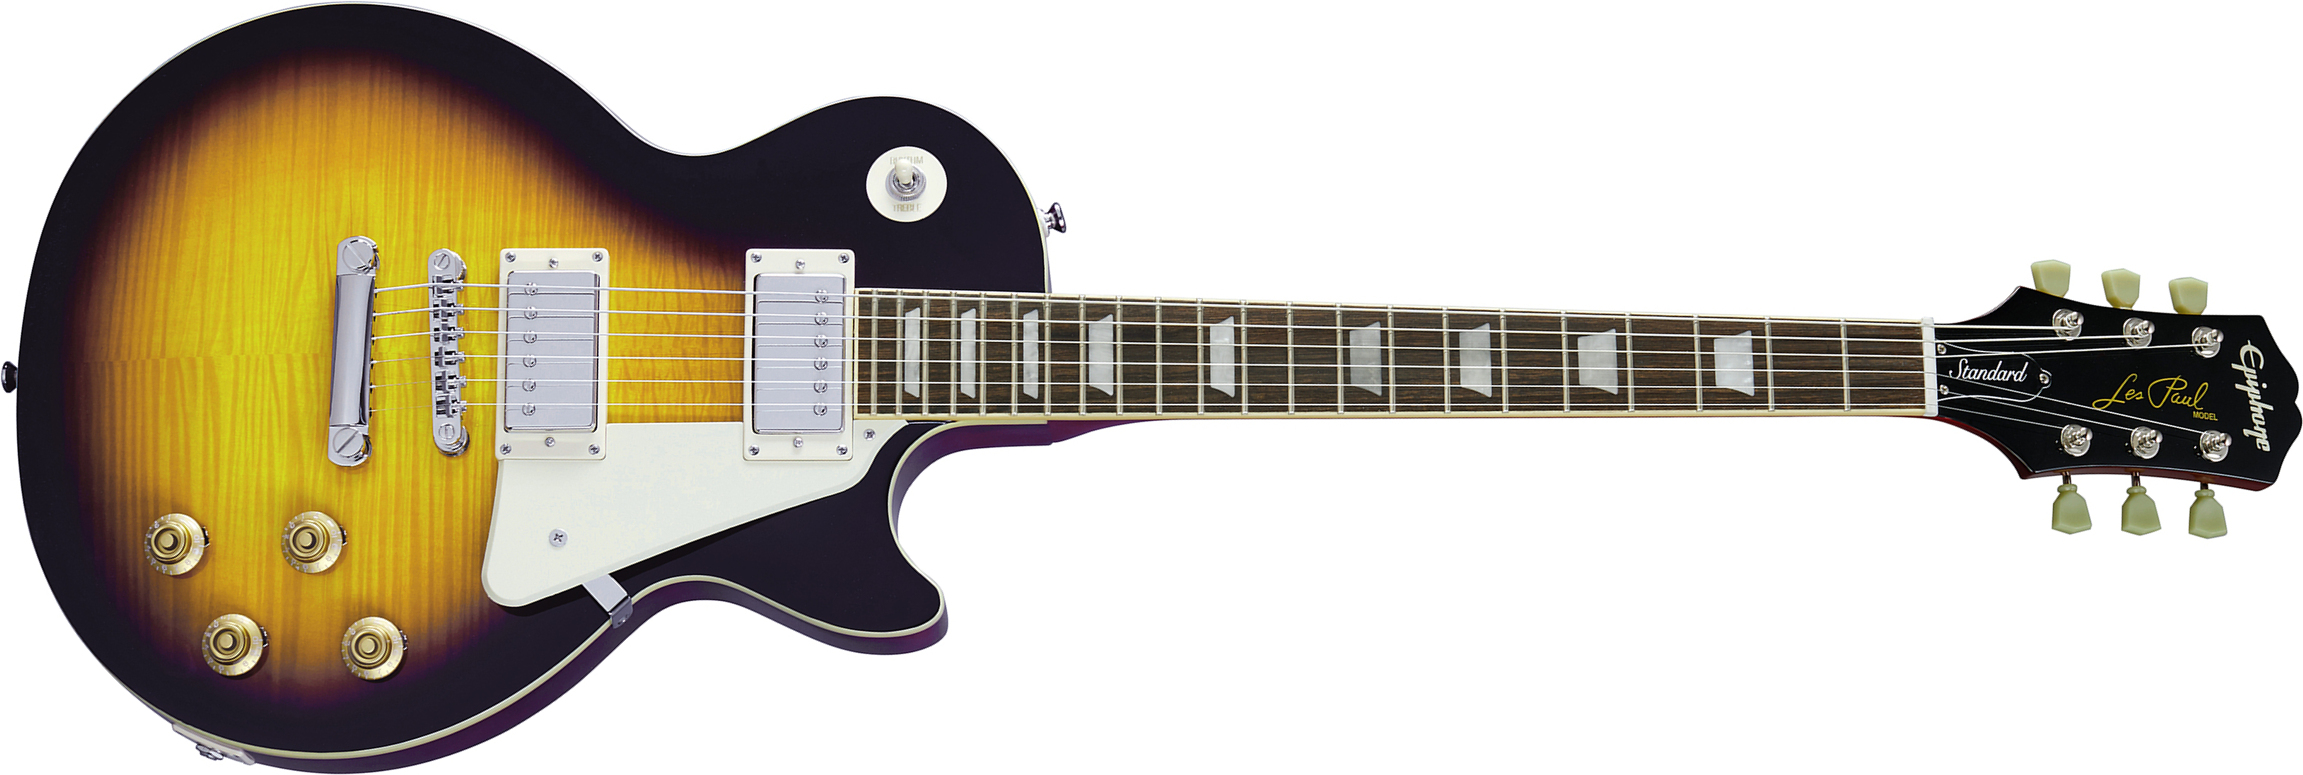 Epiphone Les Paul Standard 50s 2h Ht Rw - Vintage Sunburst - Single cut electric guitar - Main picture